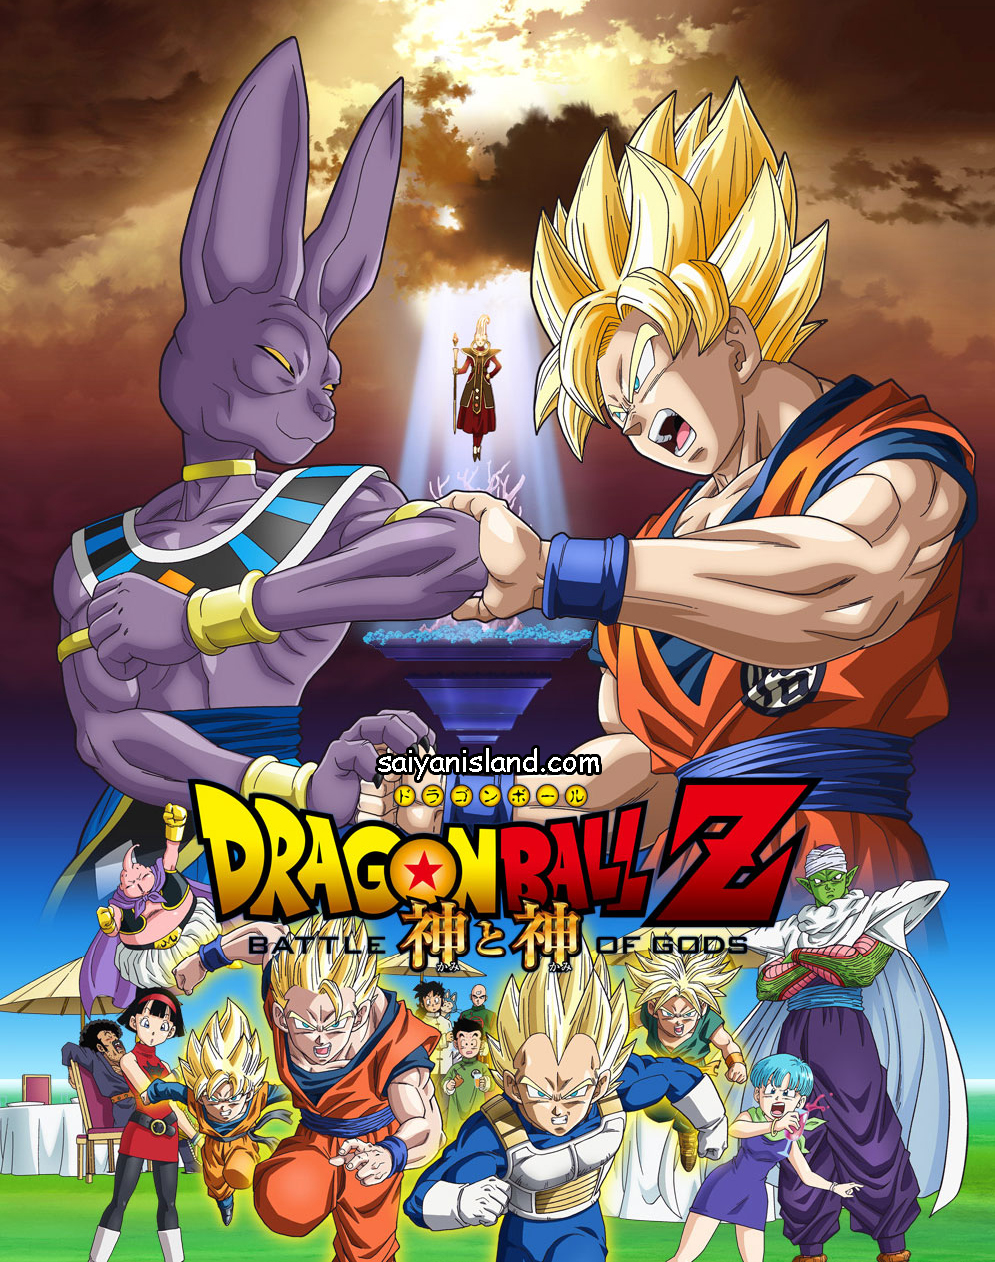 Dragon Ball Z: Battle of Gods poster